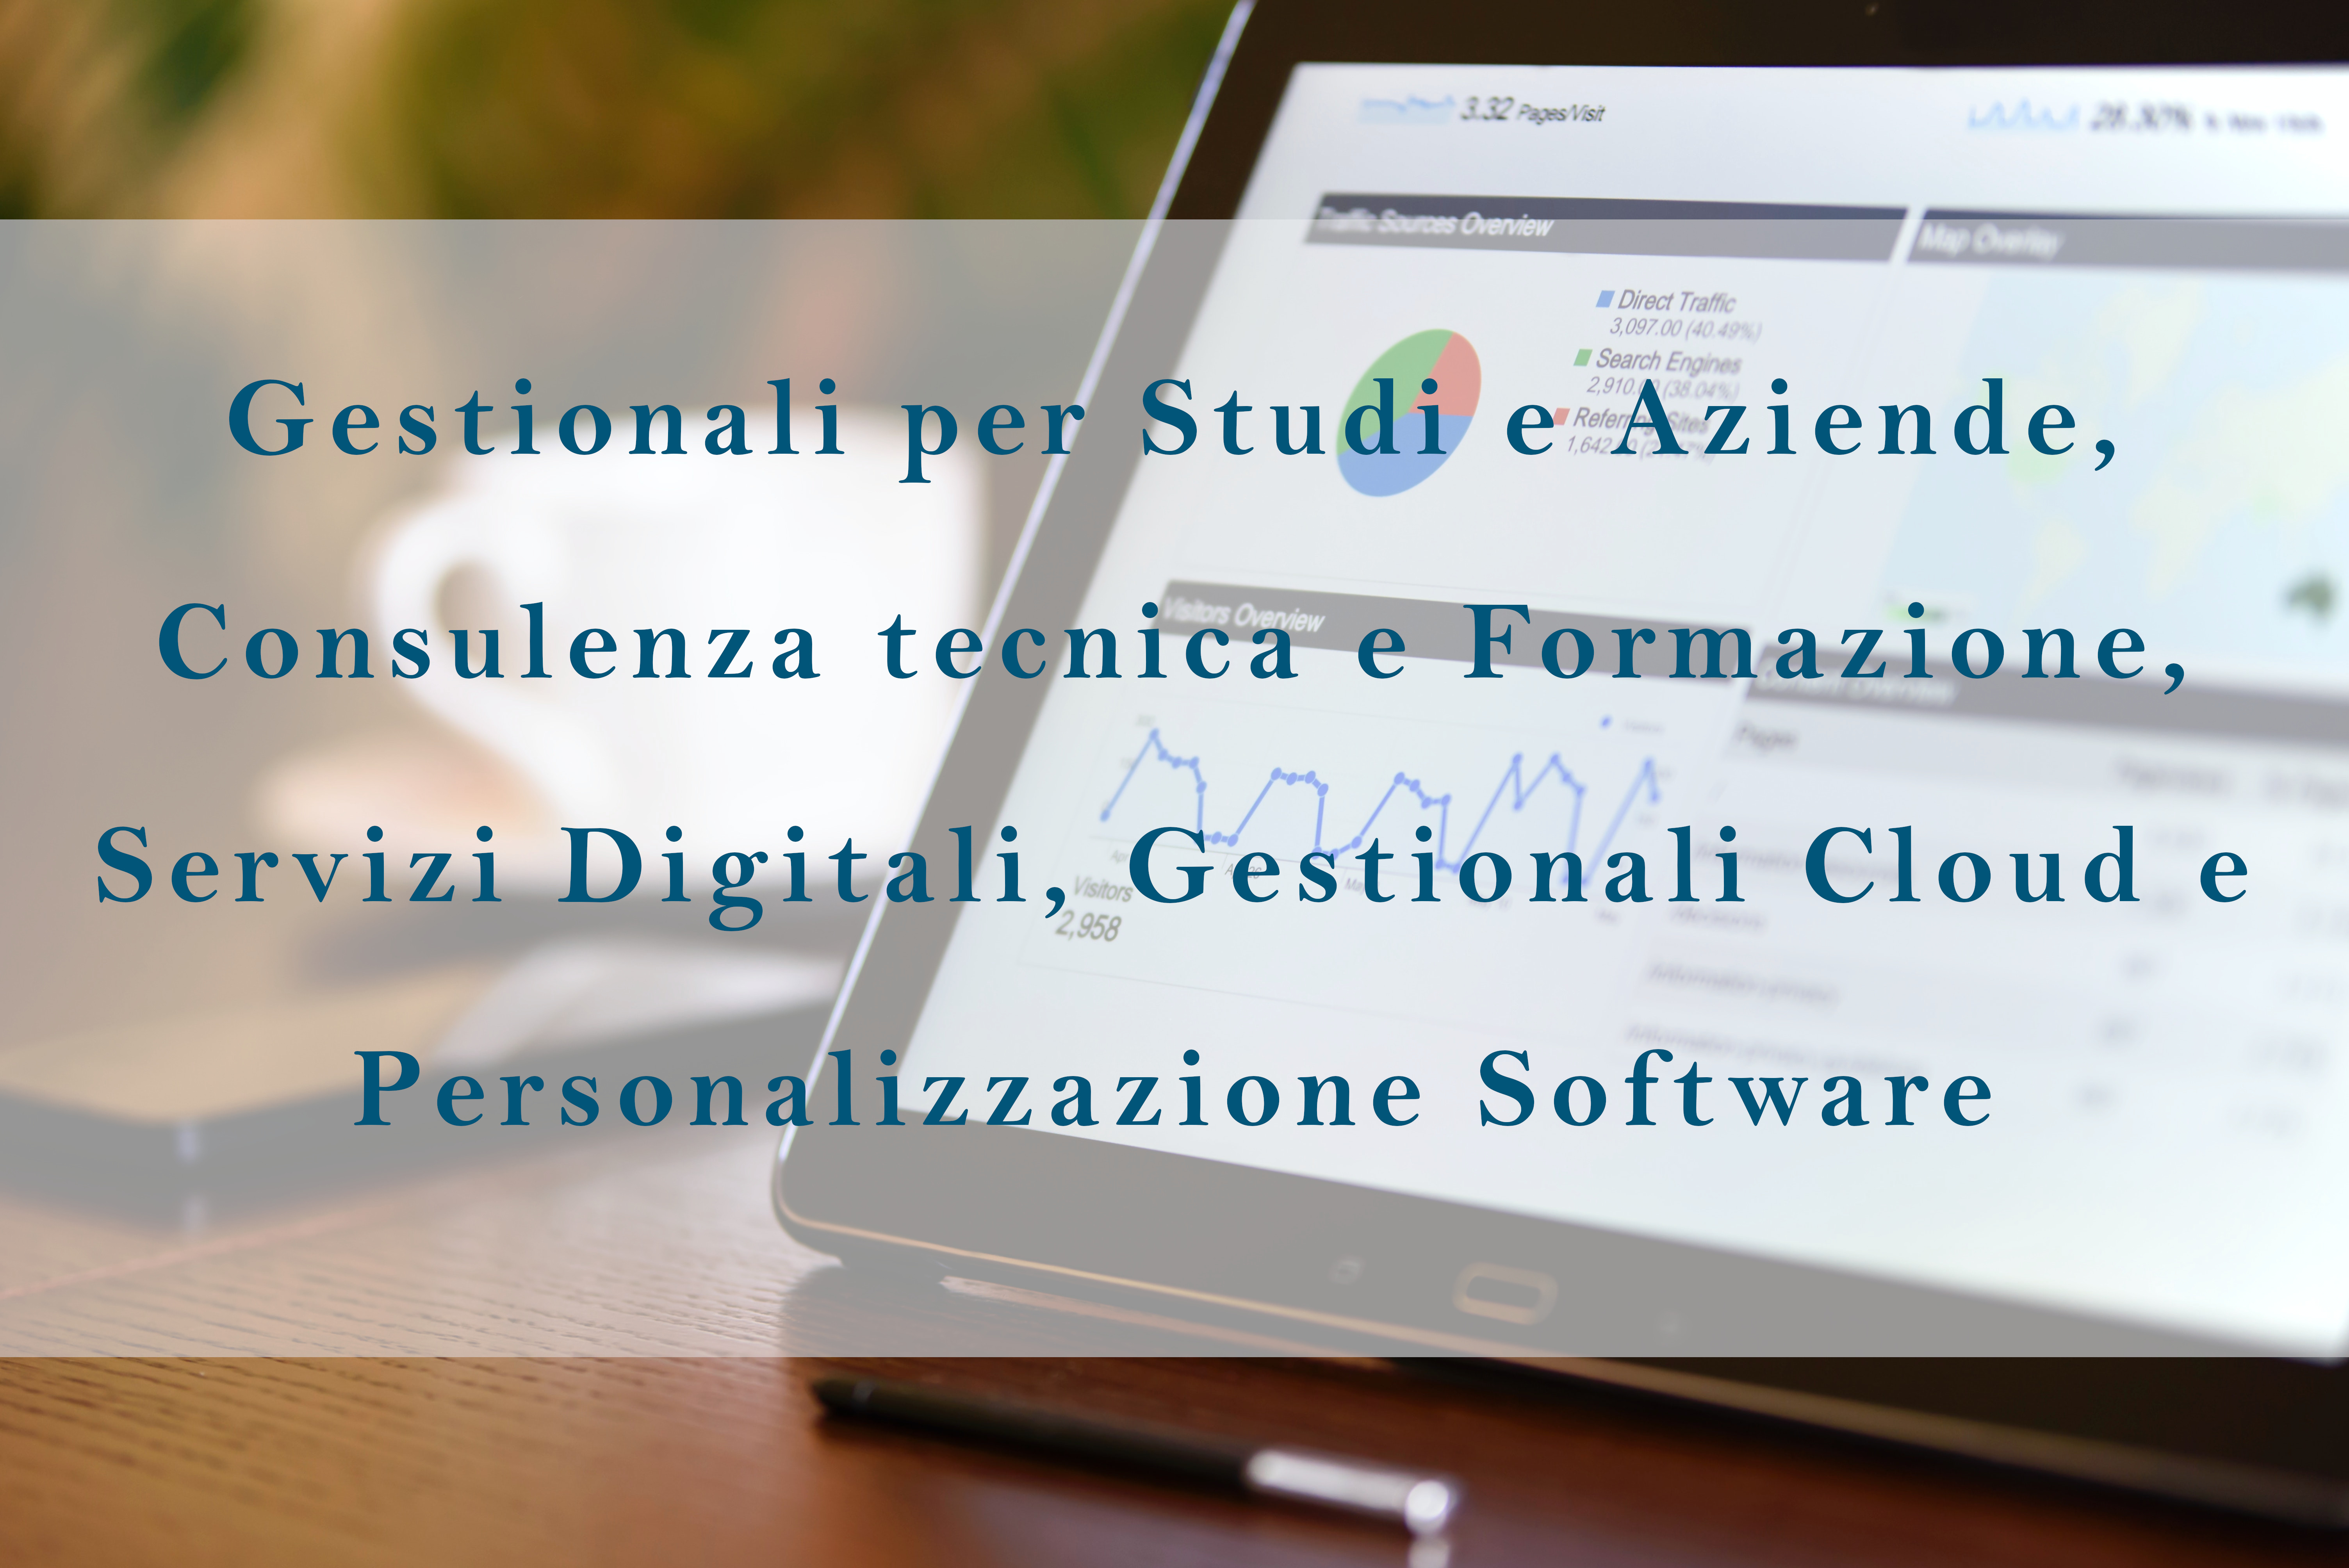 Gestionali per Studi e Aziende, Consulenza tecnica e Formazione, Servizi Digitali, Gestionali Cloud e Personalizzazione Software